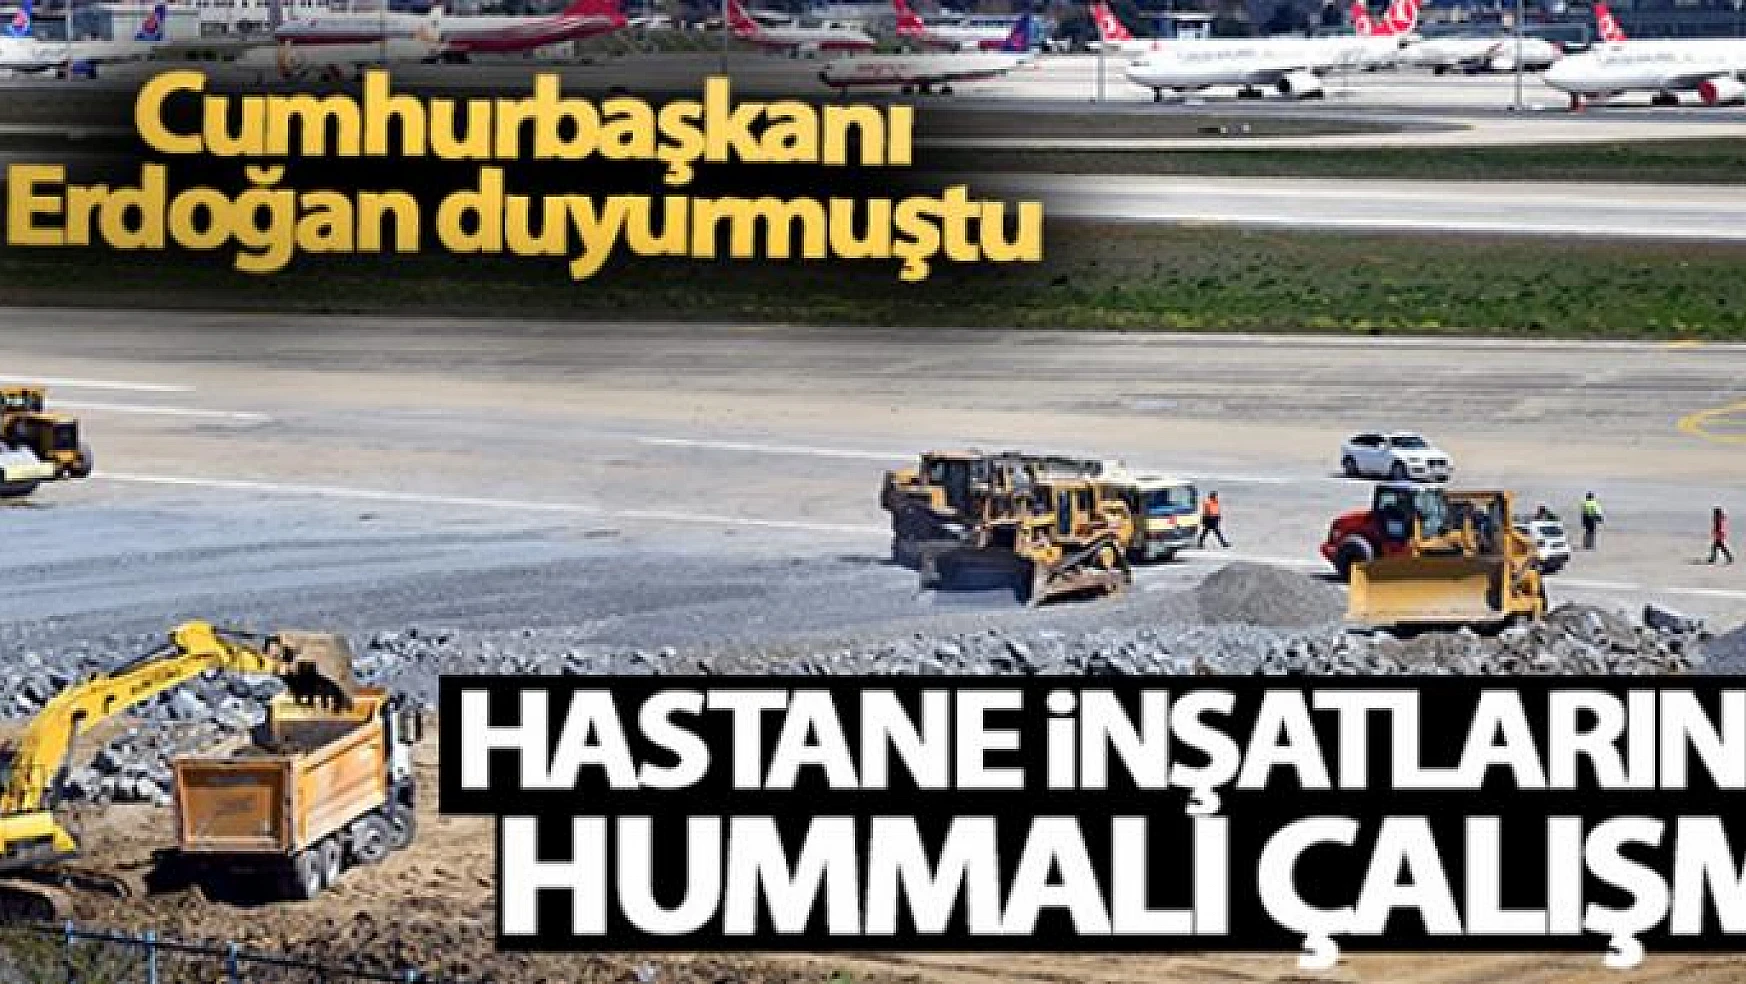 Cumhurbaşkanı Erdoğan duyurmuştu! Hastane inşatlarında hummalı çalışma